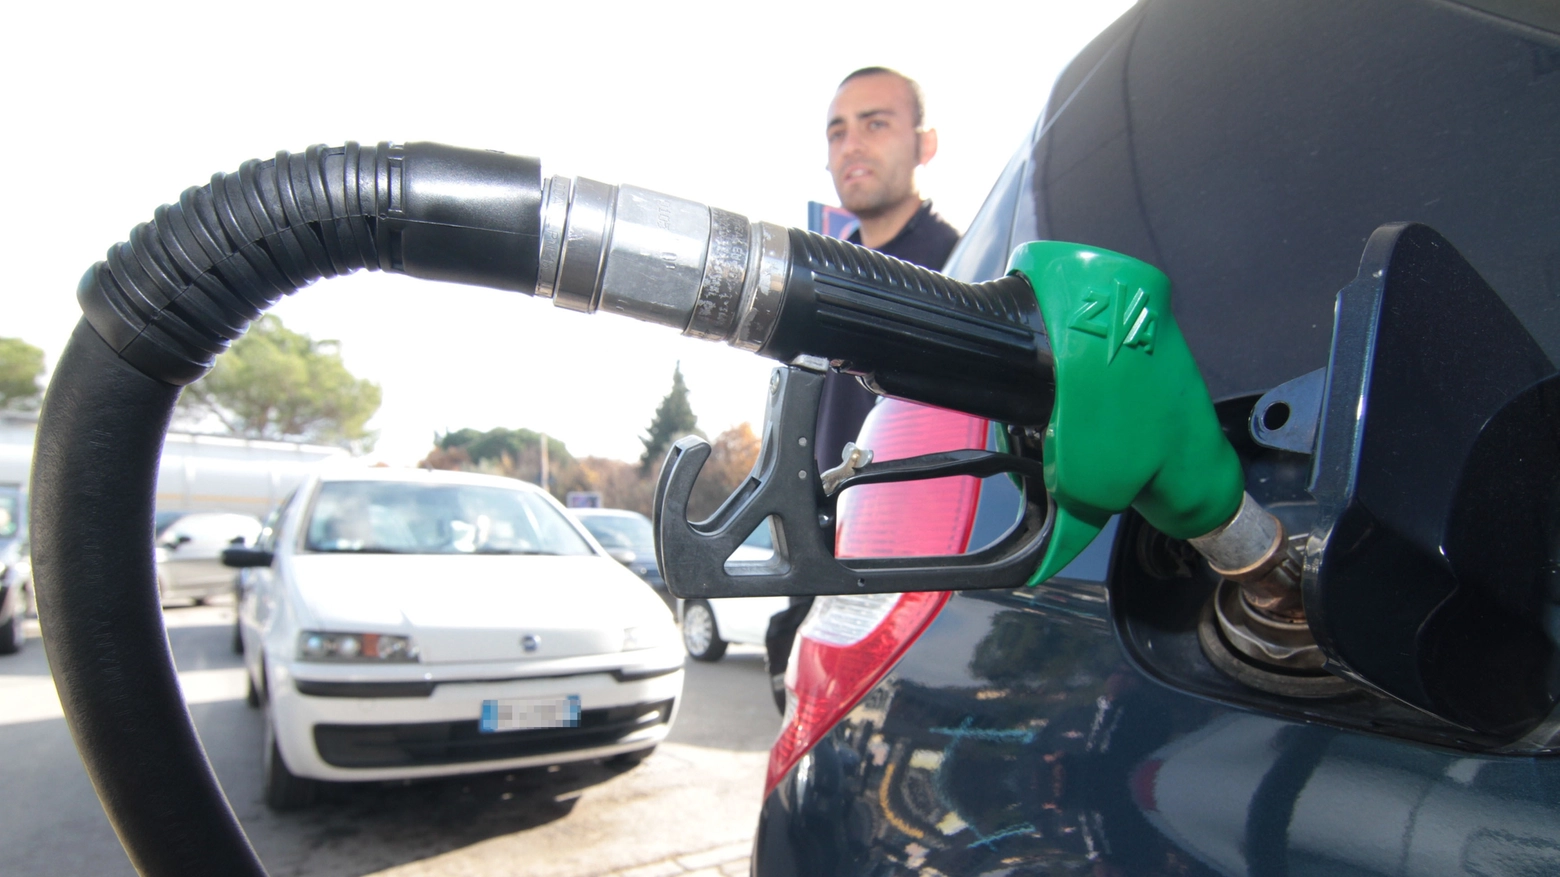 Benzinai, dal 1 agosto scatta l'obbligo di esporre il cartellone con i prezzi